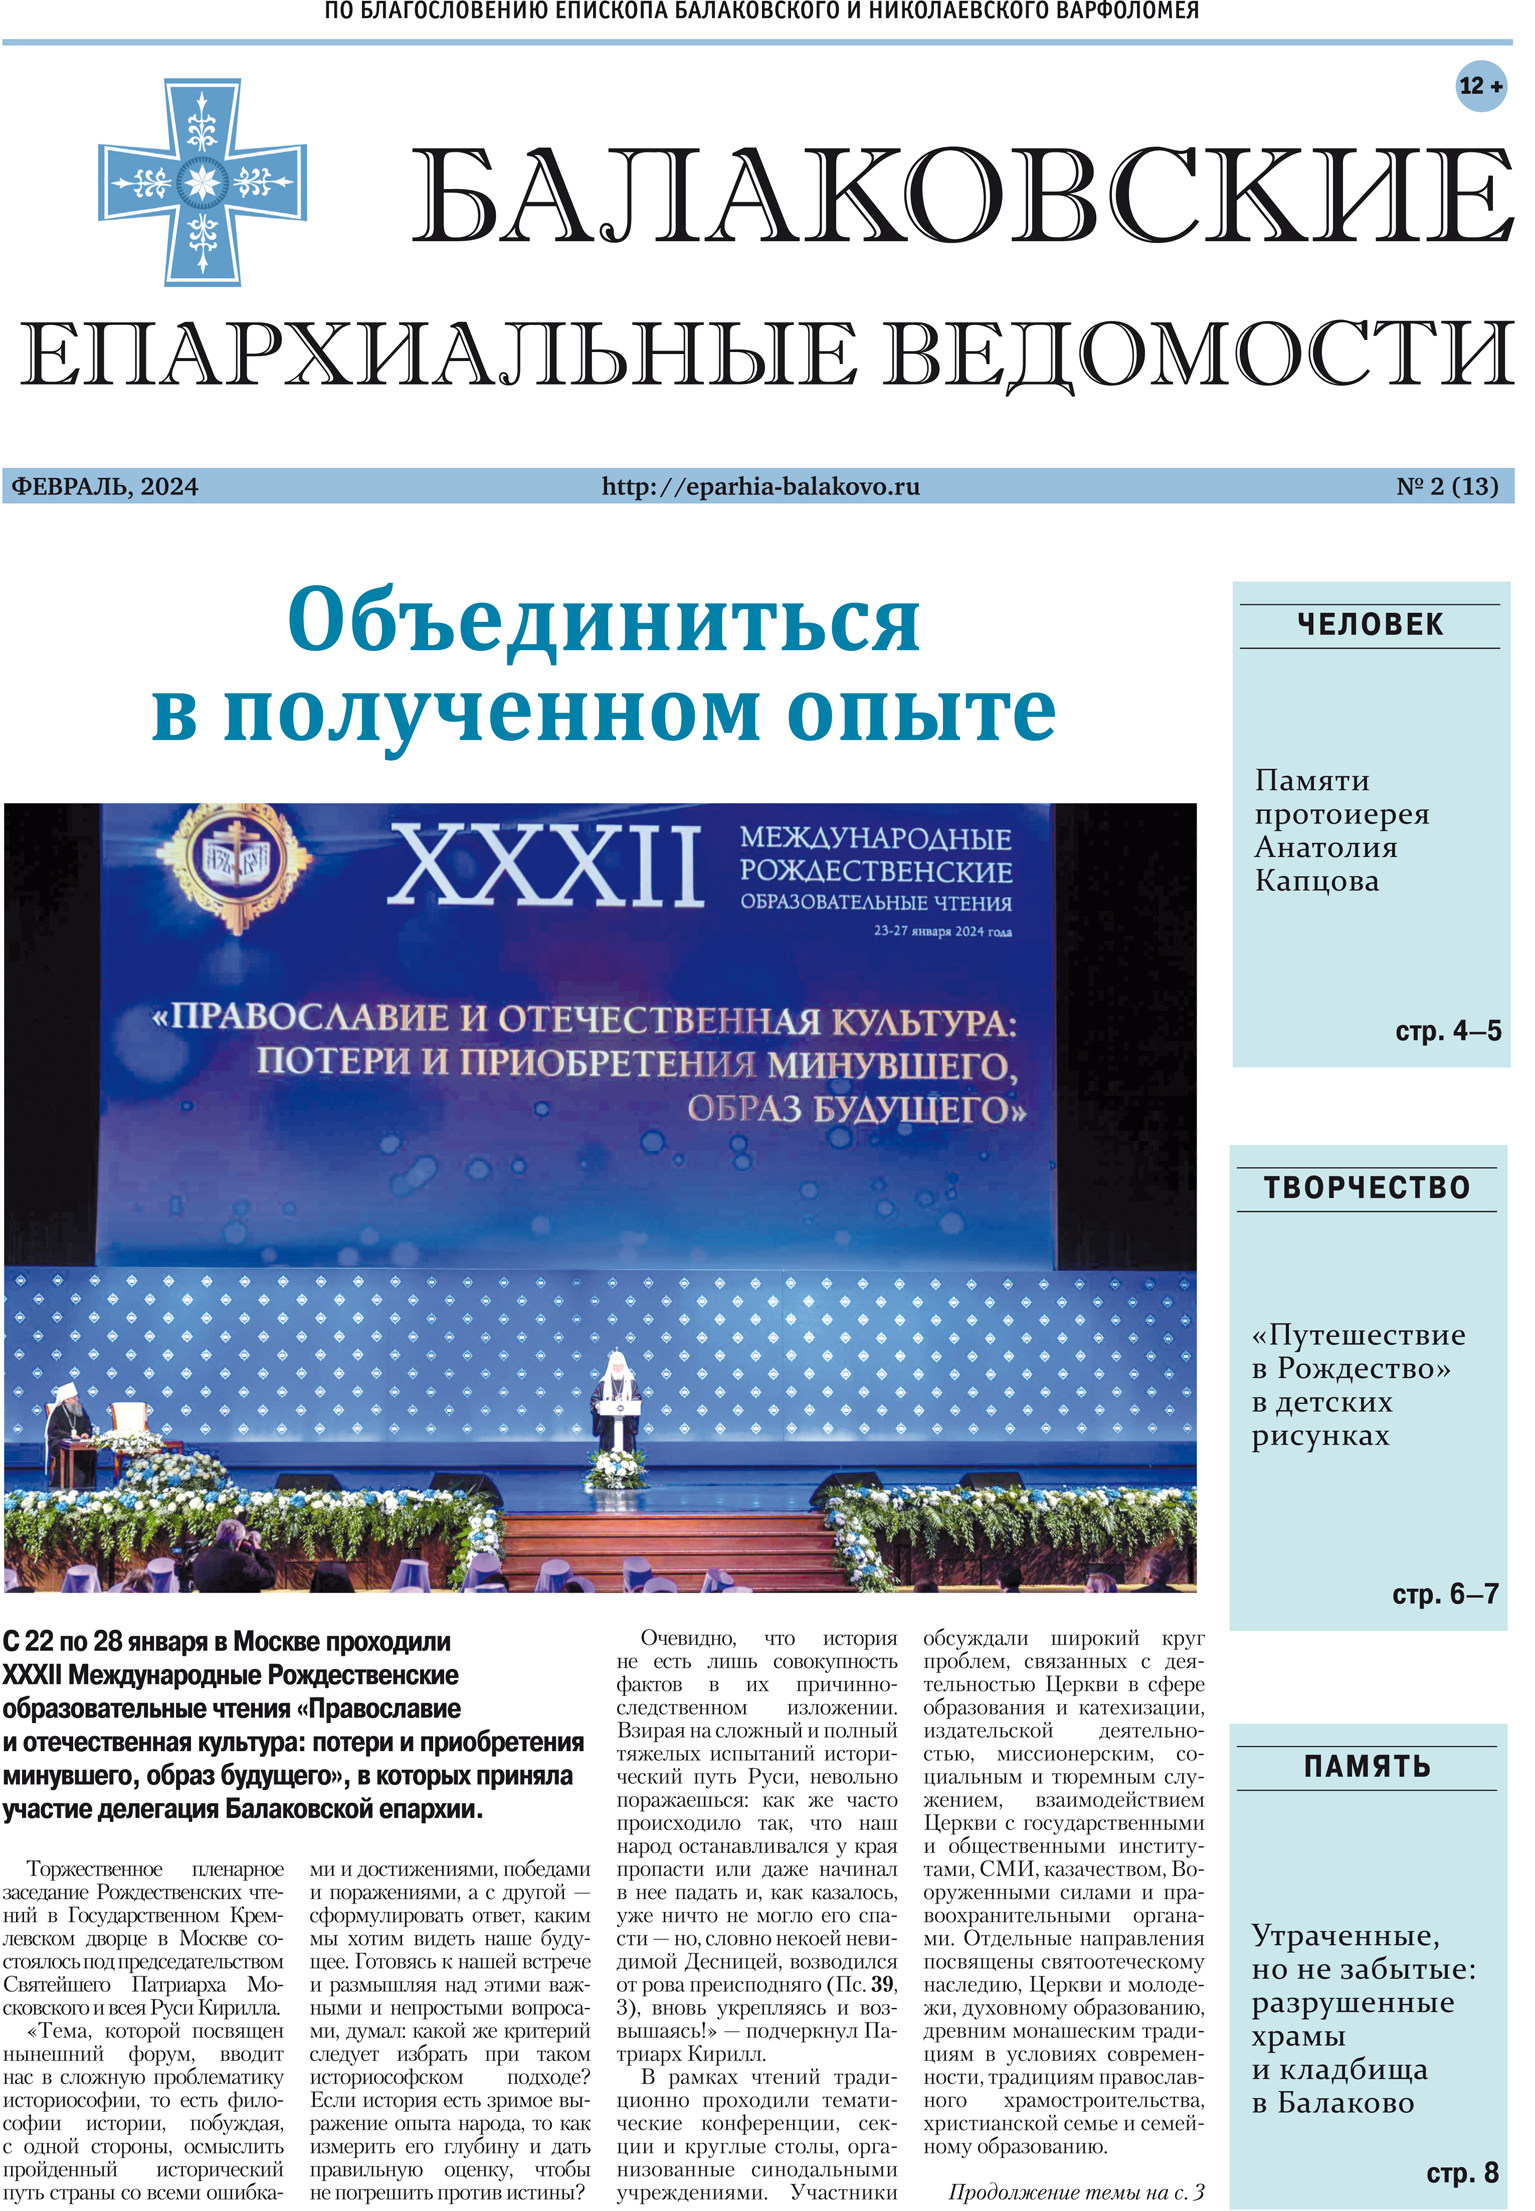 Вышел новый номер газеты «Балаковские епархиальные ведомости»